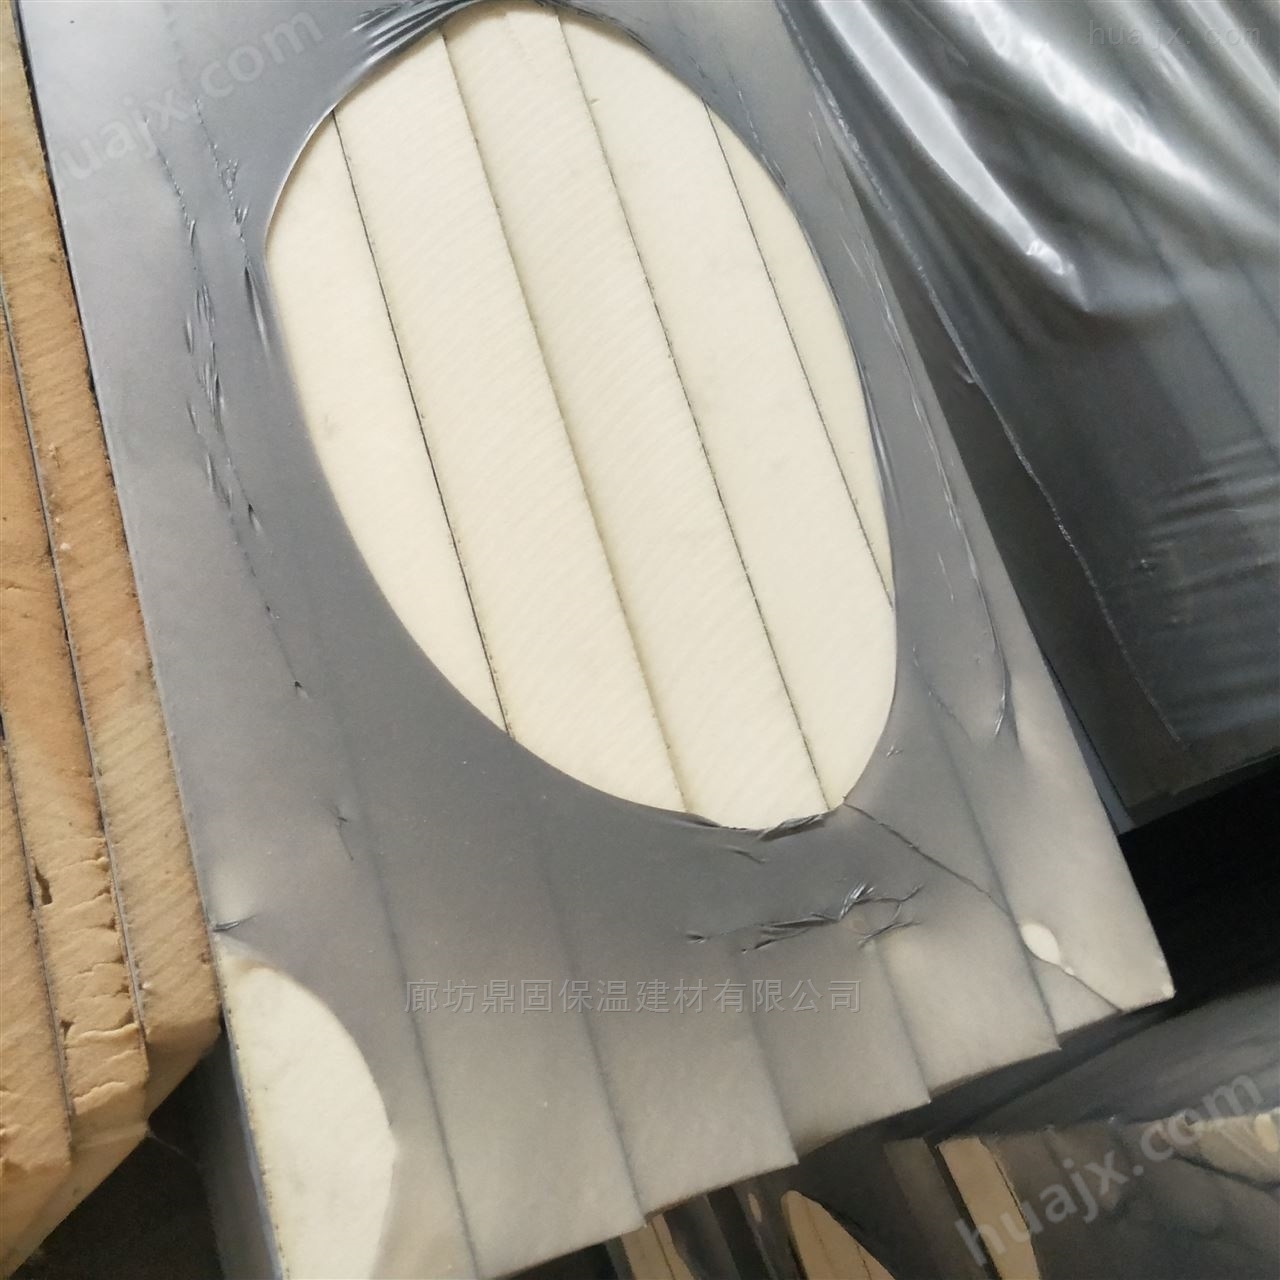 昆明市70厚硬质聚氨酯保温板出厂价格